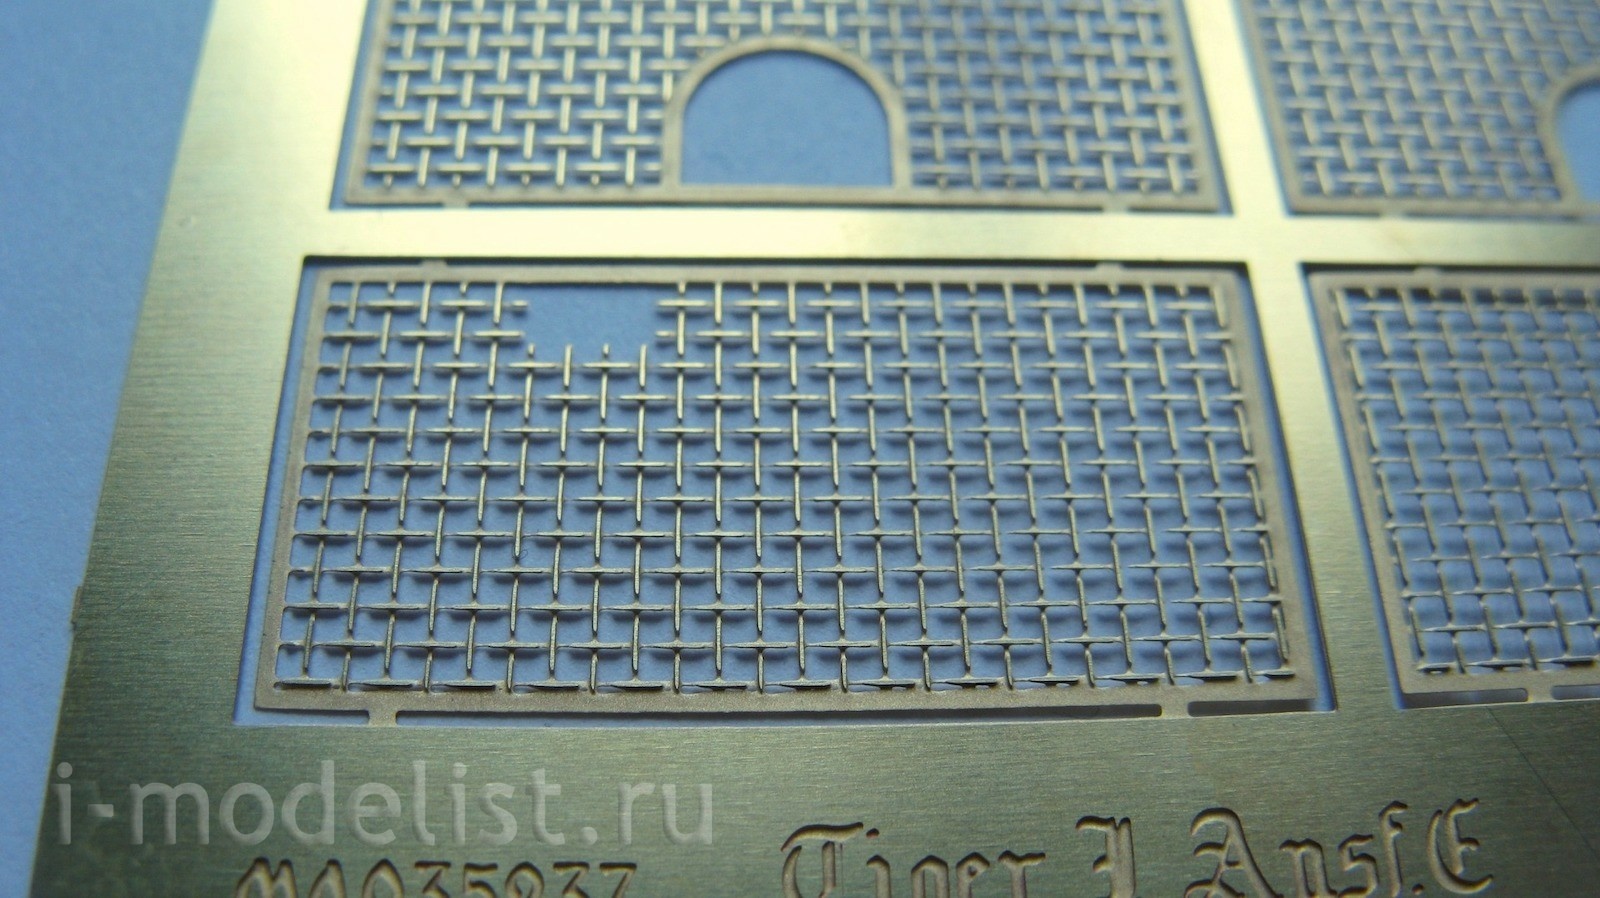 035237 Microdesign 1/35 t-VI Grid from Zvezda 1:35